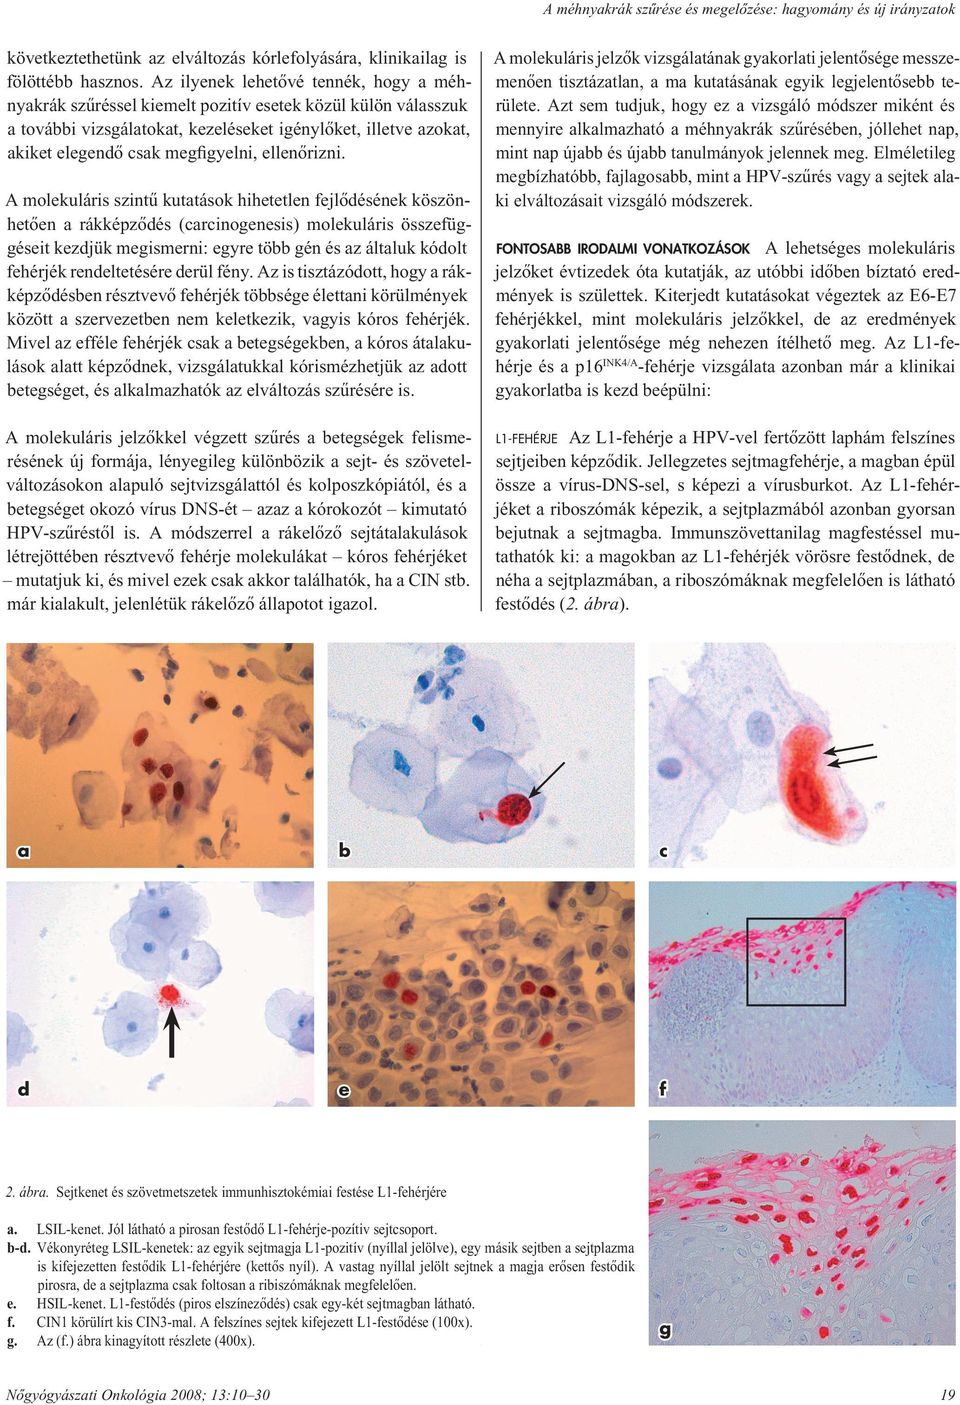 Nőgyógyászati lelet, citológiai vizsgálat jelentése és értelmezése